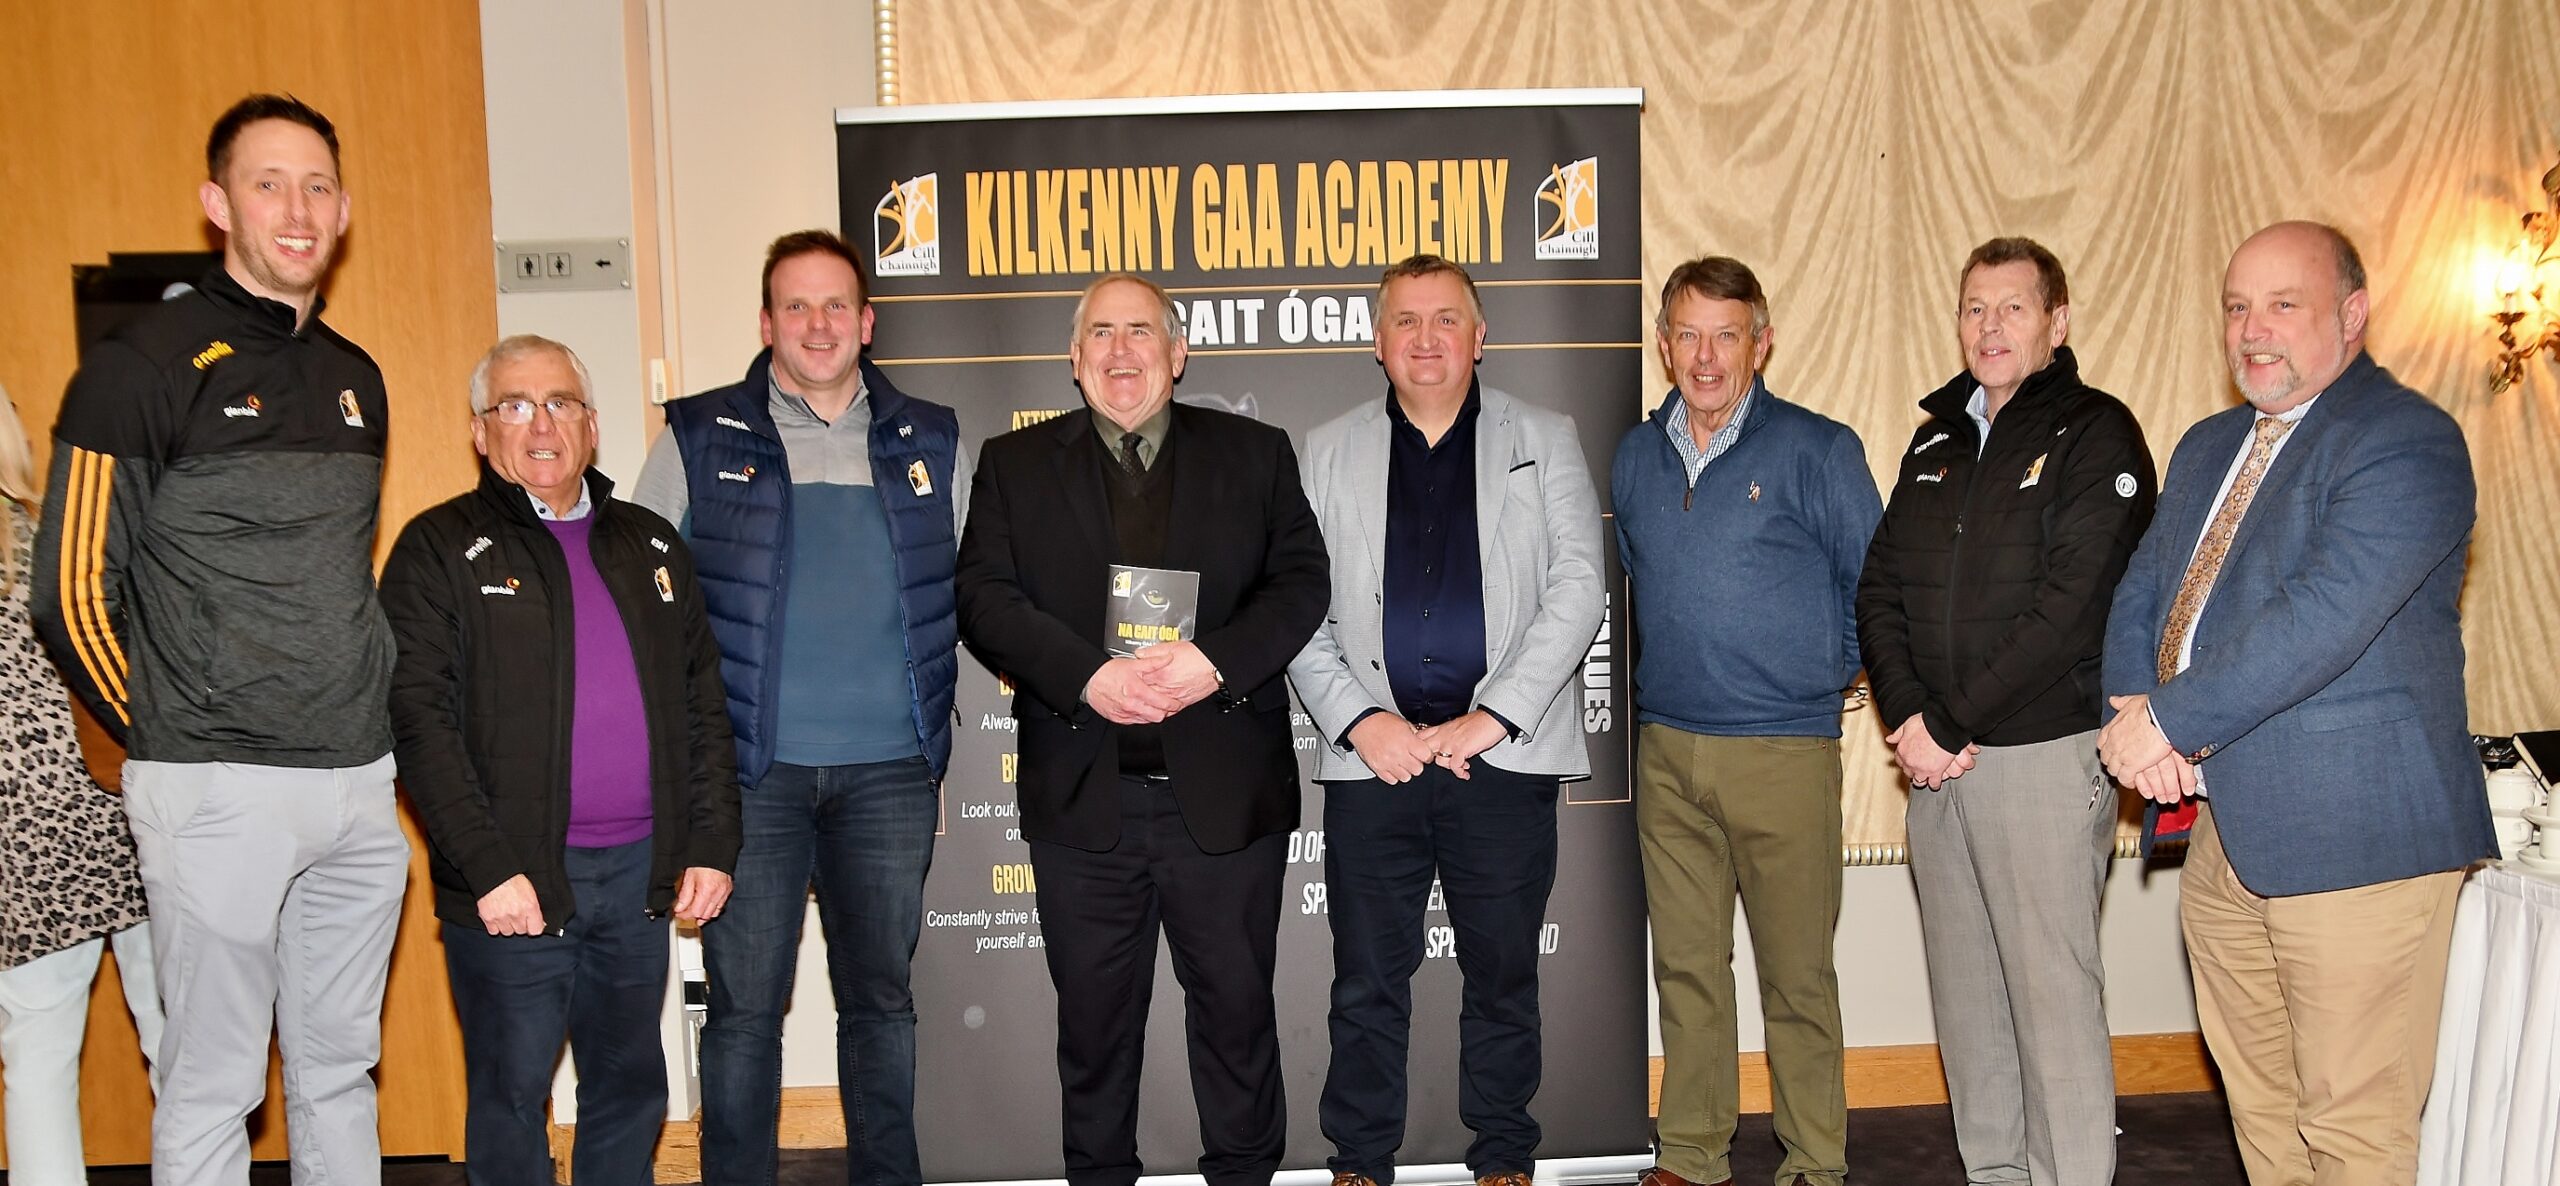 Introducing The Kilkenny GAA Academy (Na Cait Óga)